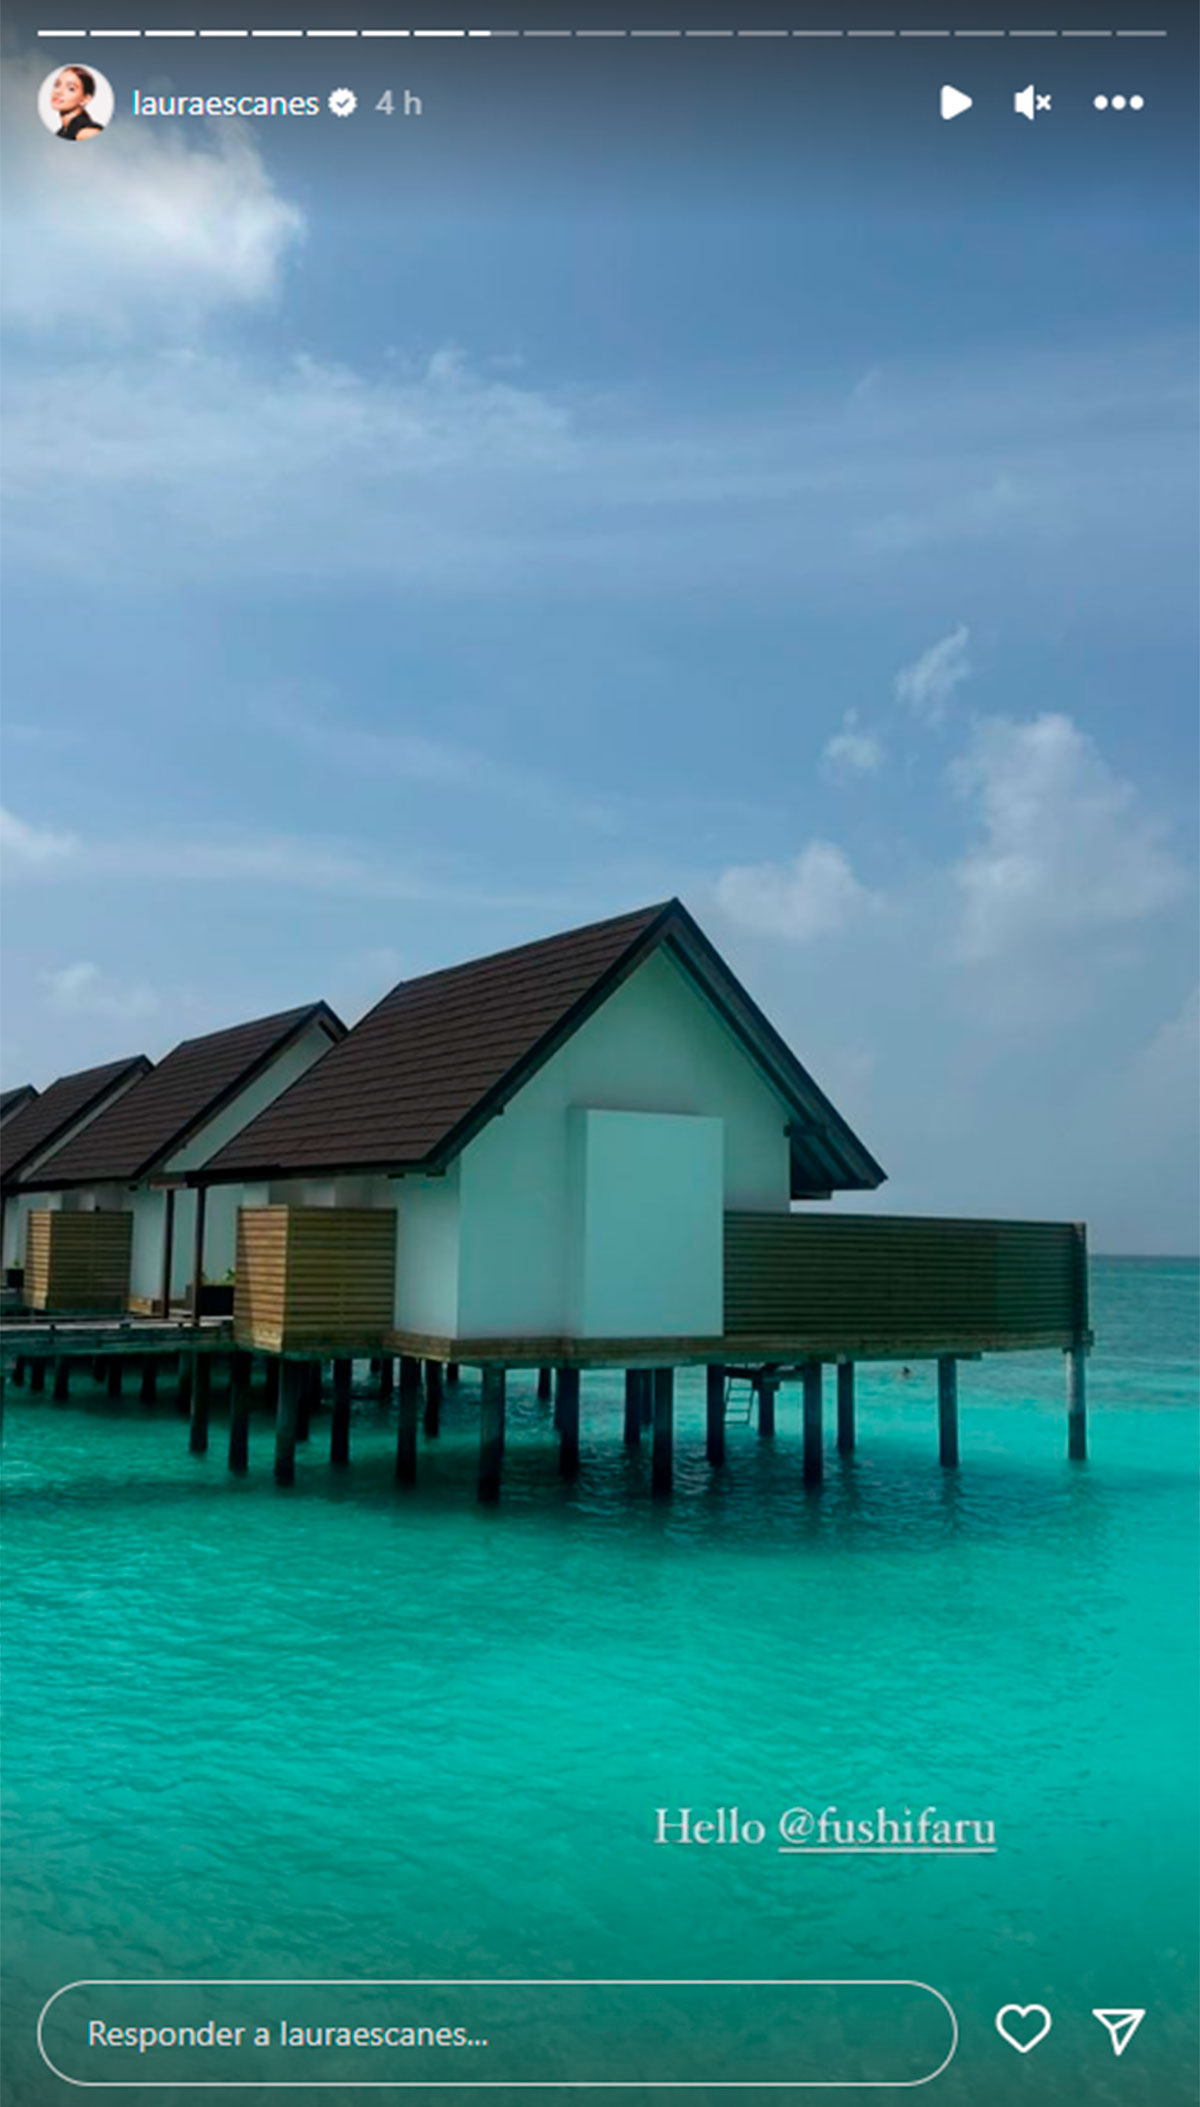 Descubrimos el lujoso hotel en el que Laura Escanes y Álvaro de Luna se alojan en Maldivas por 942 euros la noche